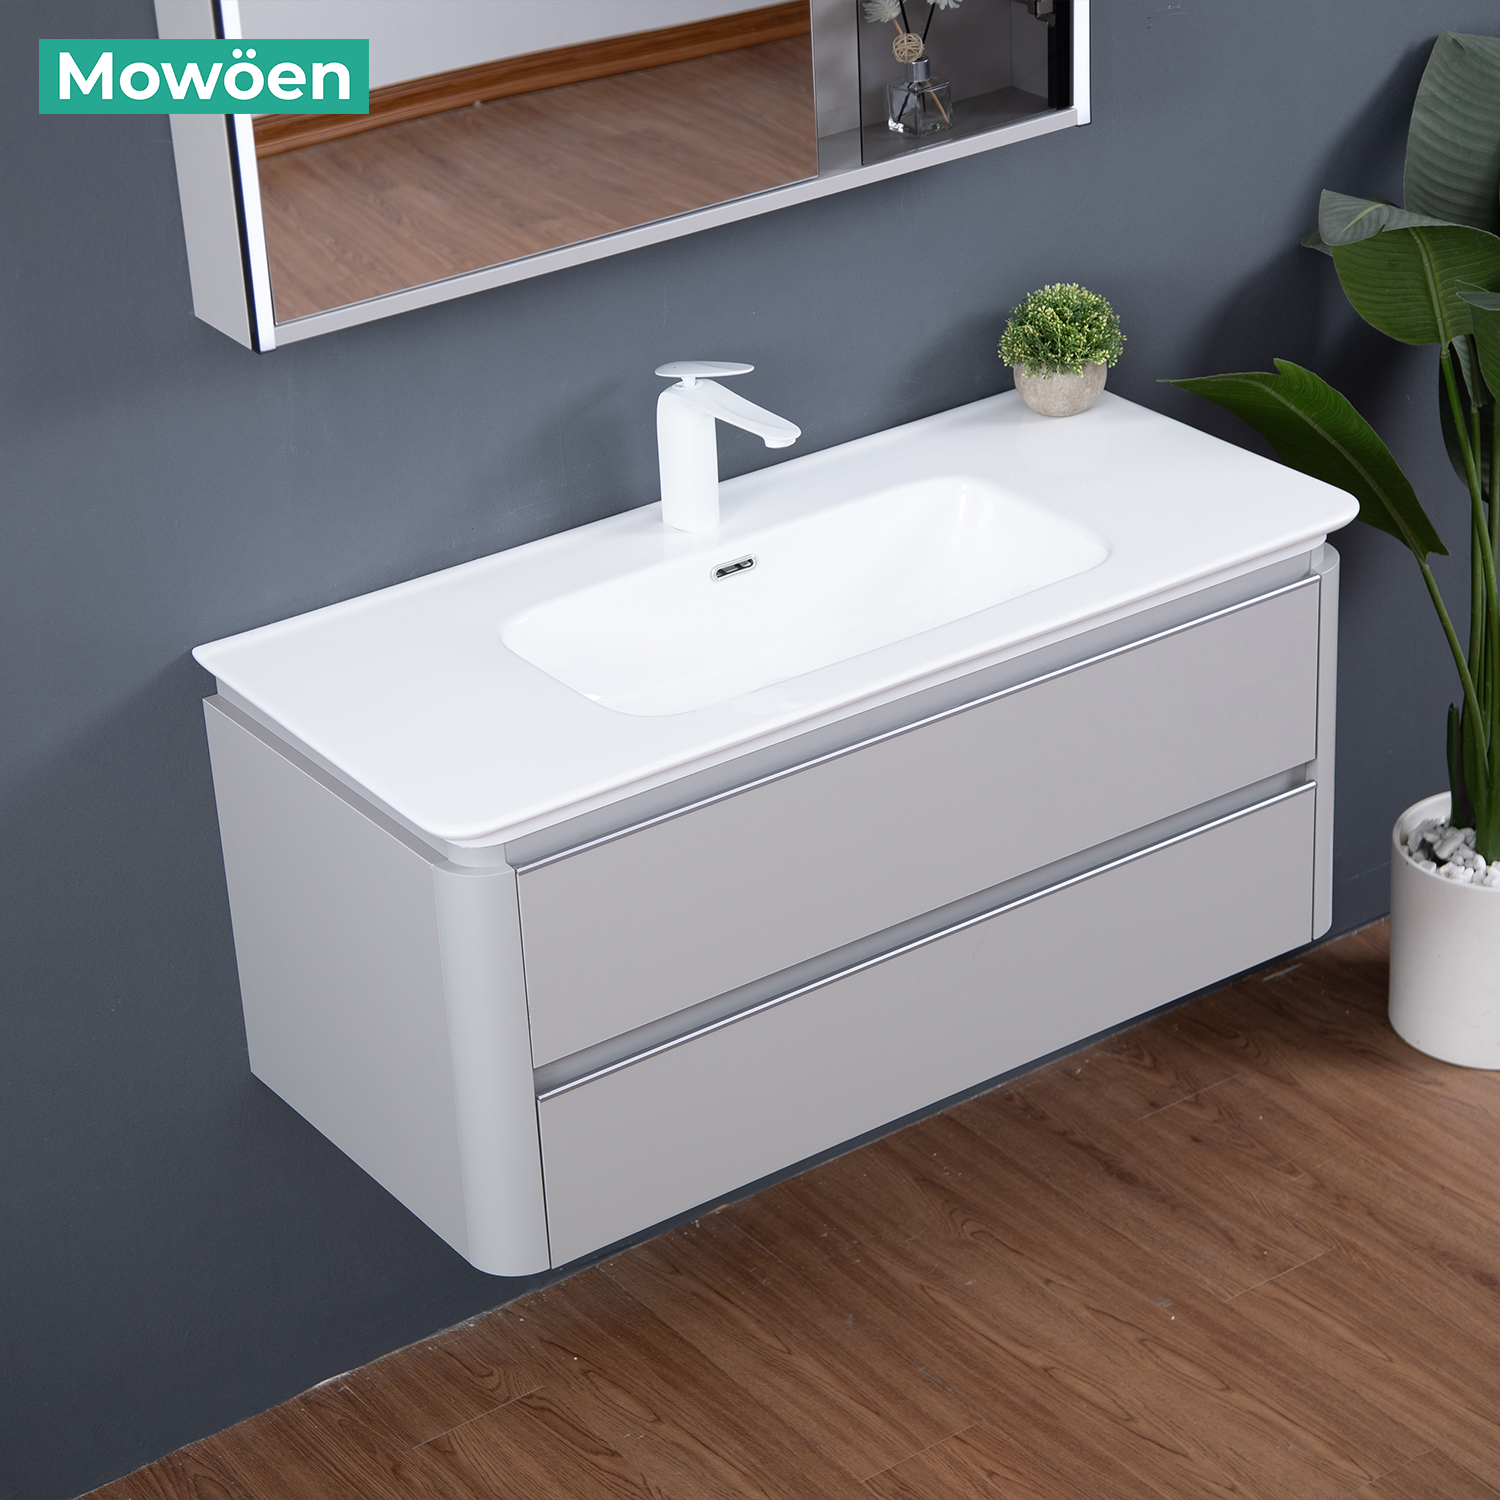 Tủ Lavabo Mowoen MW6632 – 100 chất liệu Plywood treo tường phòng tắm